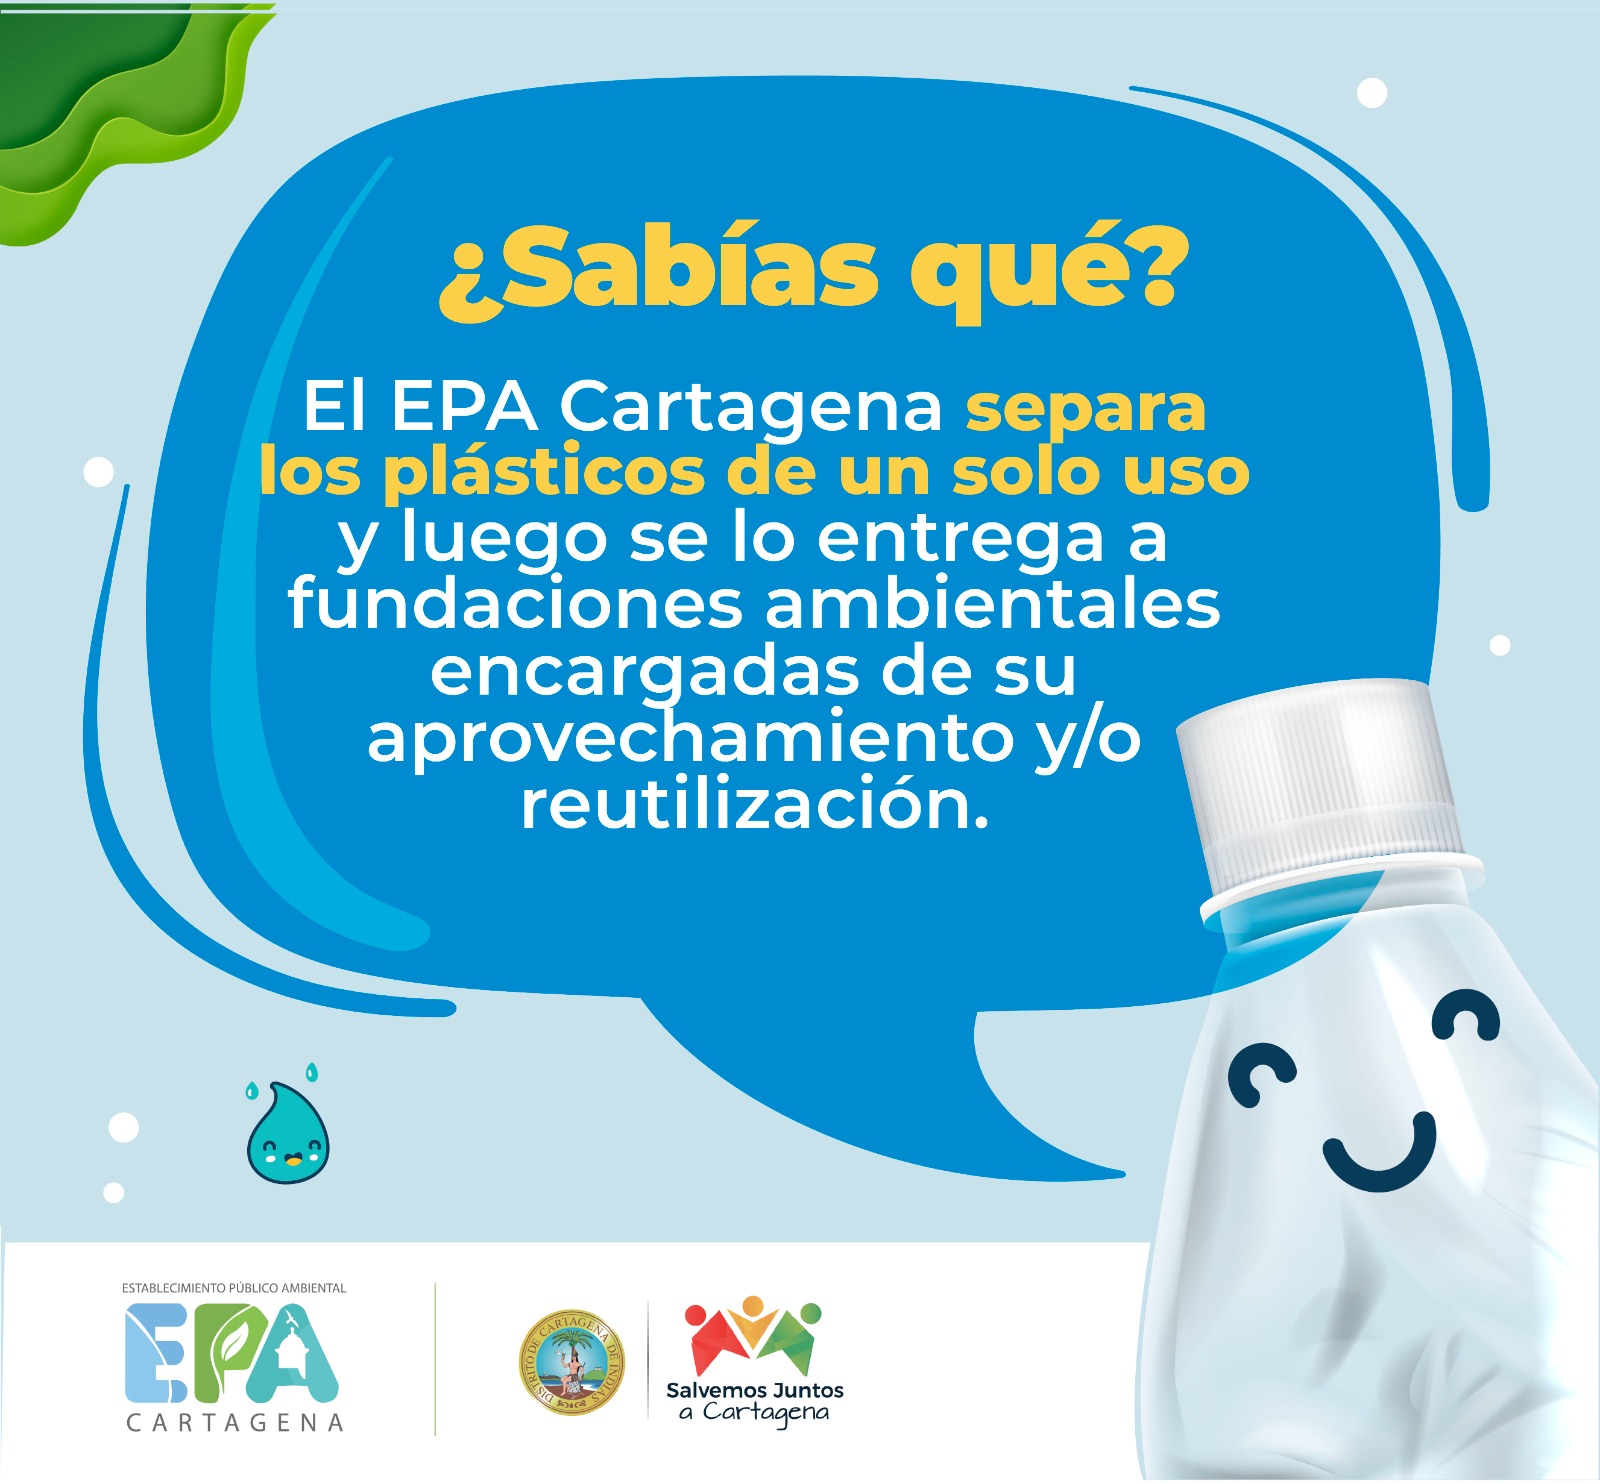 Publicación para redes sociales, relacionada con la forma en como separa el plástico el EPA Cartagena